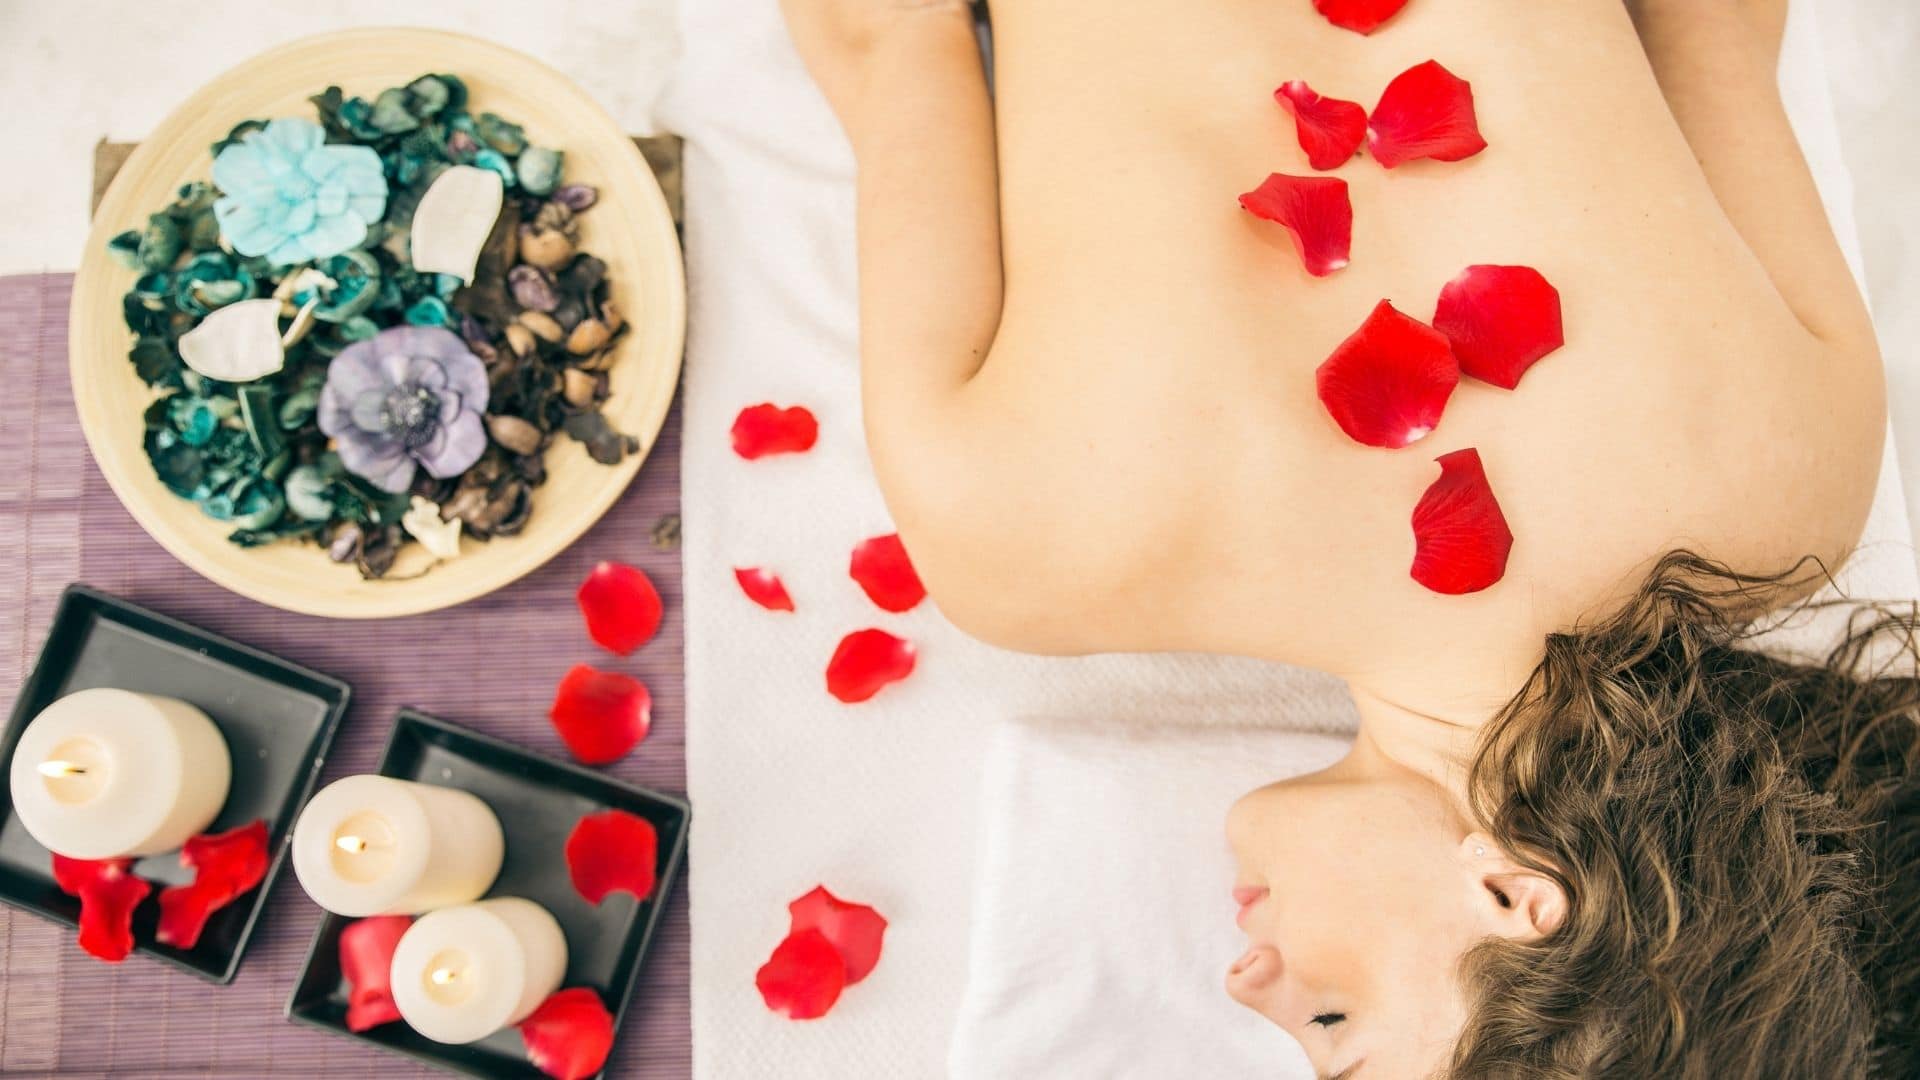 Wie du eine erotische Massage gibst, bei der dein Partner um mehr betteln wird